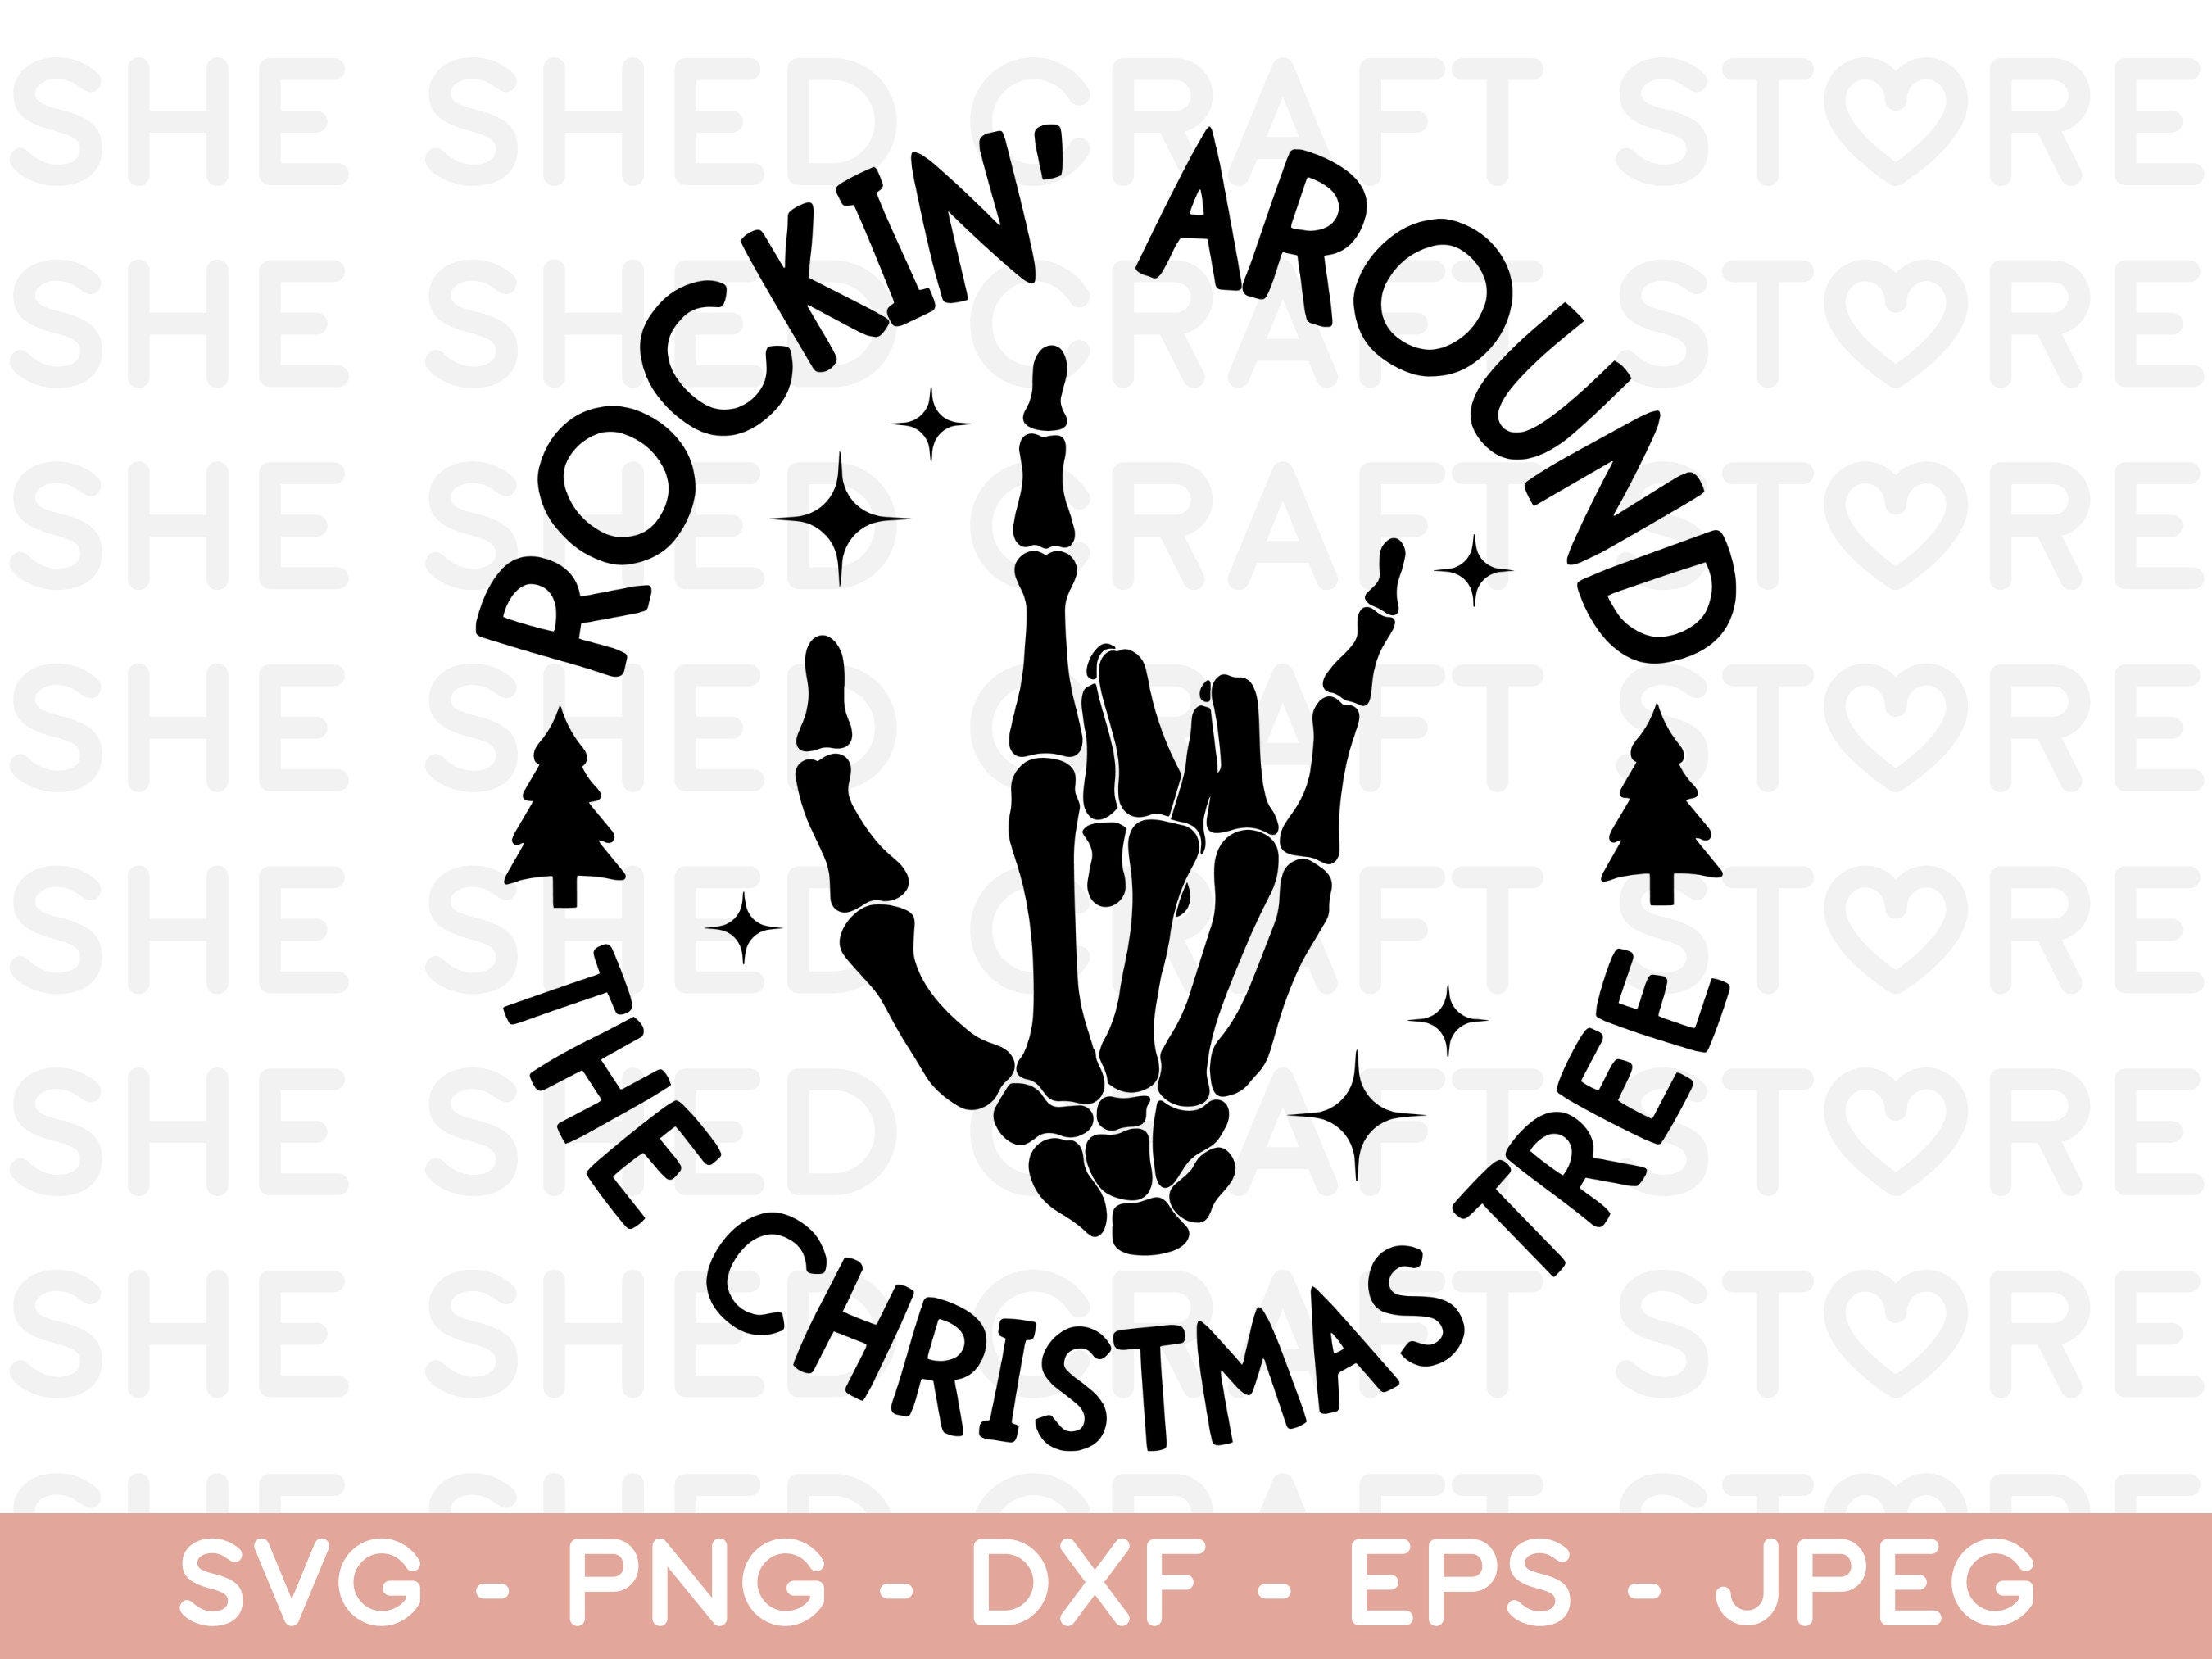 Christmas Tree SVG, Rockin Around SVG, Christmas Tree Svg, Holiday Svg, Christmas Svg, Minimal Merry Xmas Svg, Rockin Around PNG, Cut File